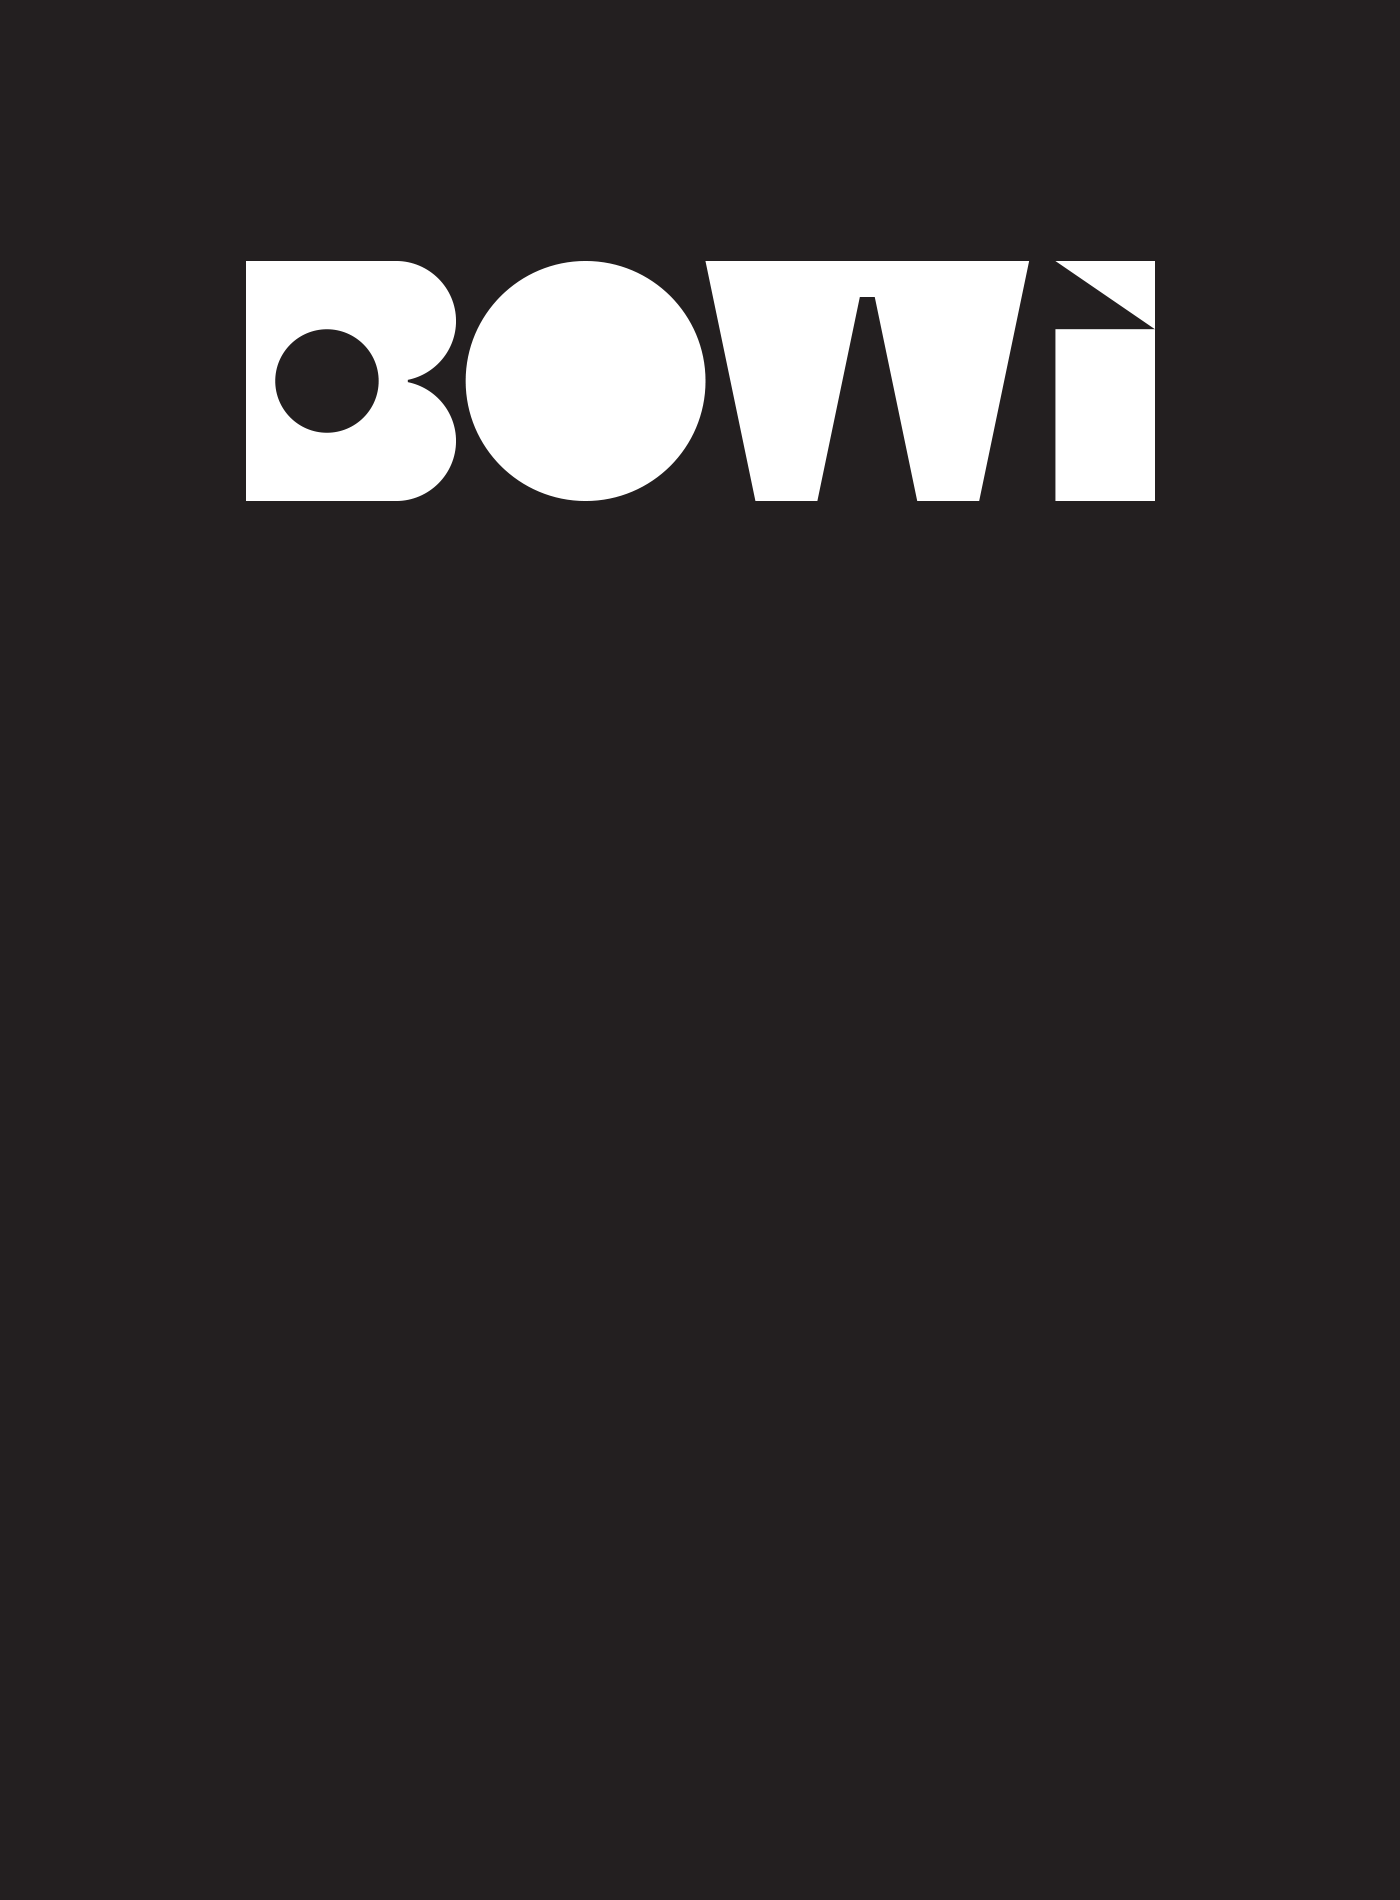 Bowi Croqueta by Blavet Studio